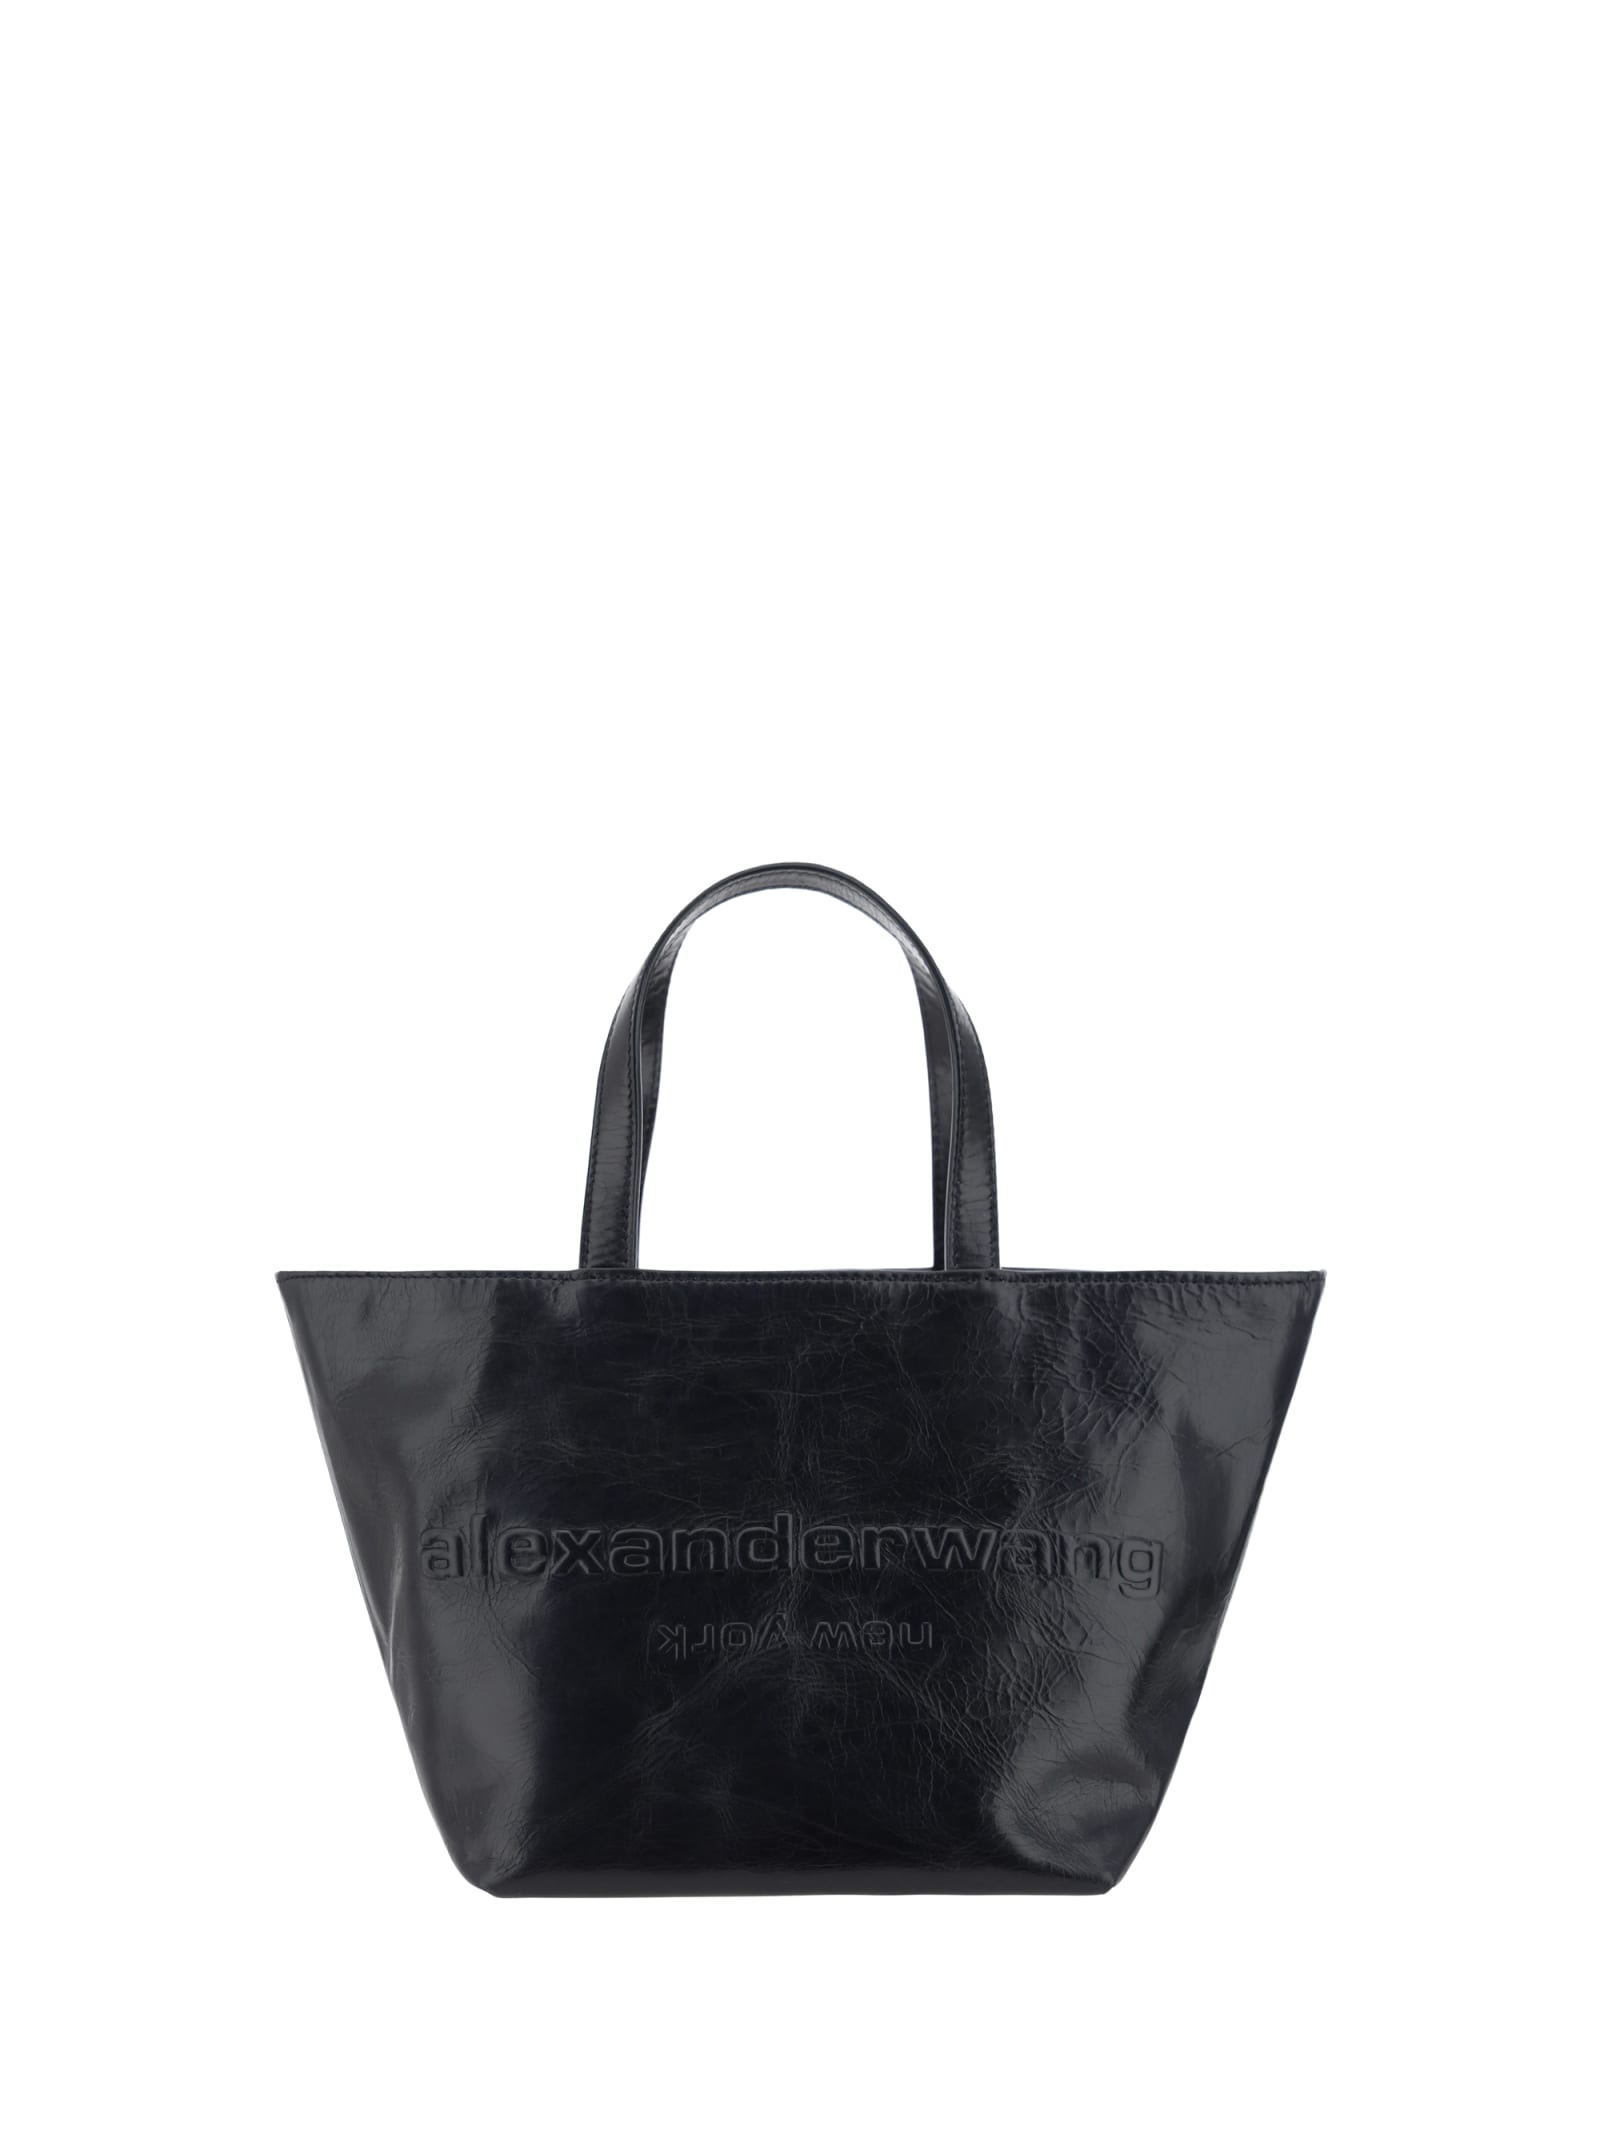 Alexander Wang Punch Small Tote Handbag In Black